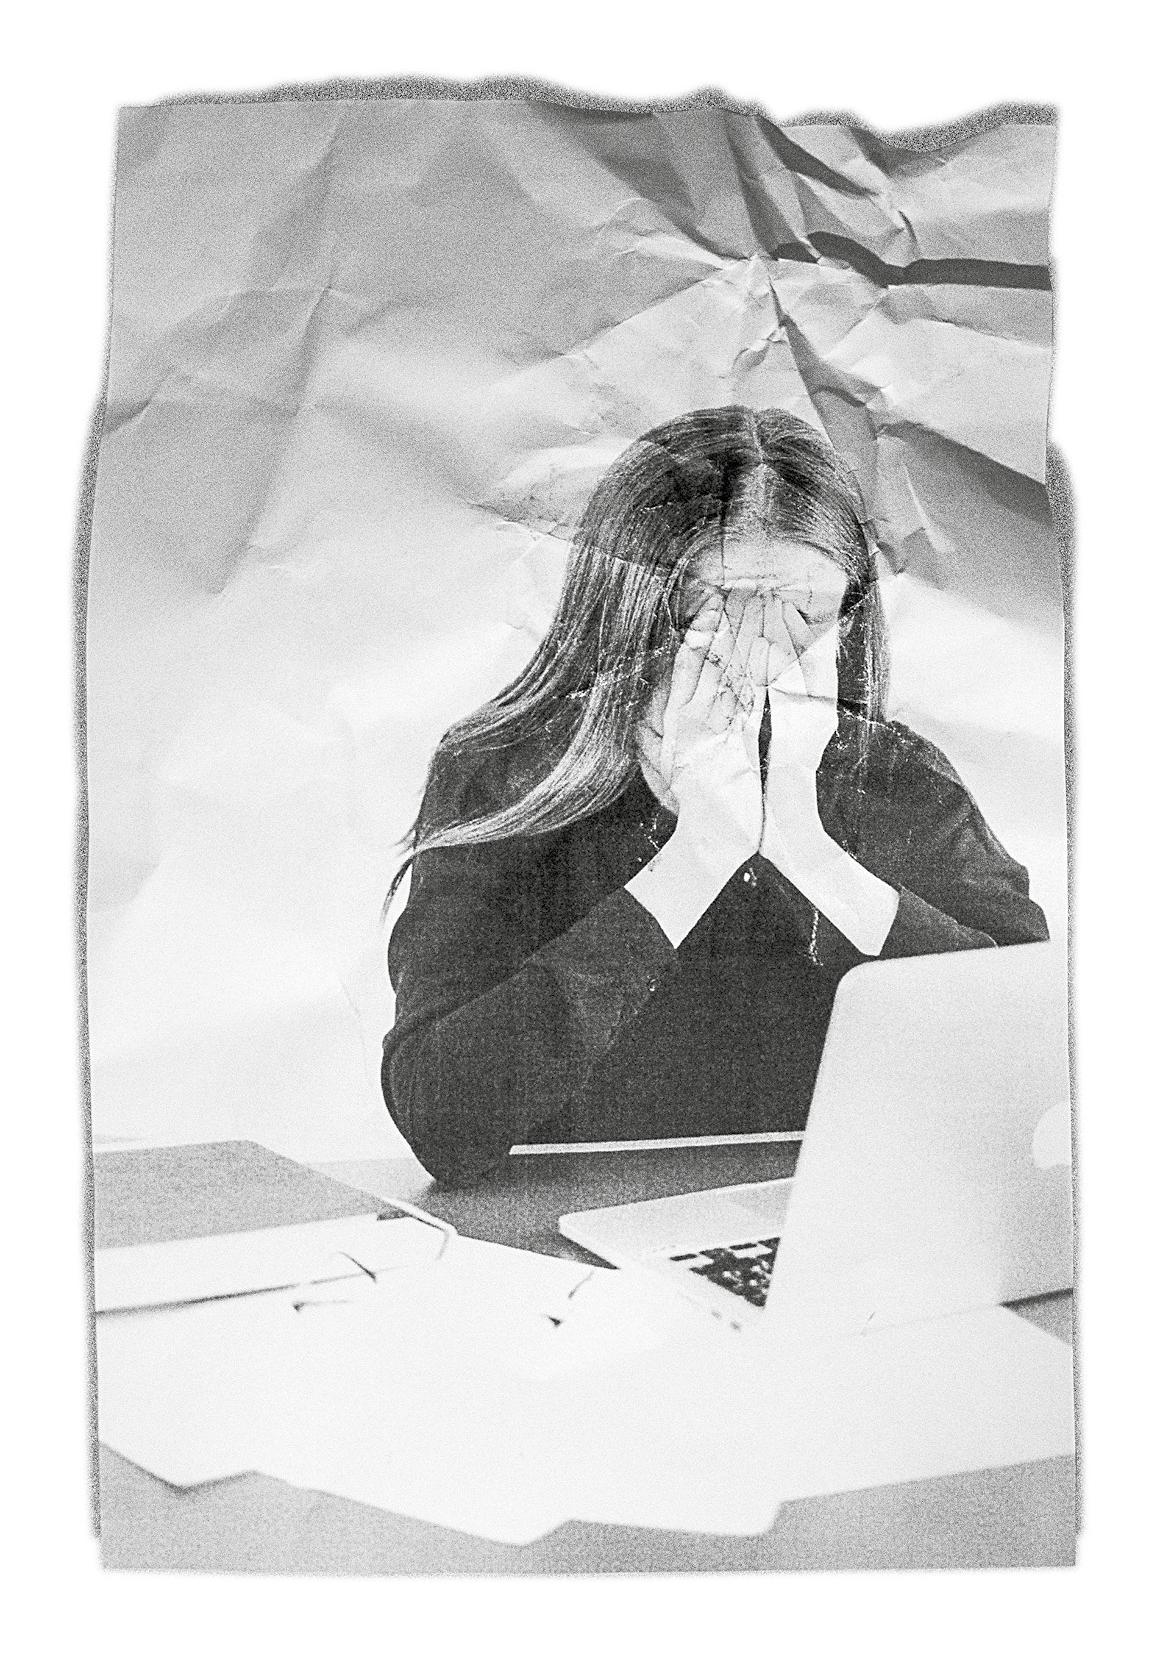 Eine Person vor einem Laptop, die beide Hände vor dem Gesicht zusammenschlägt